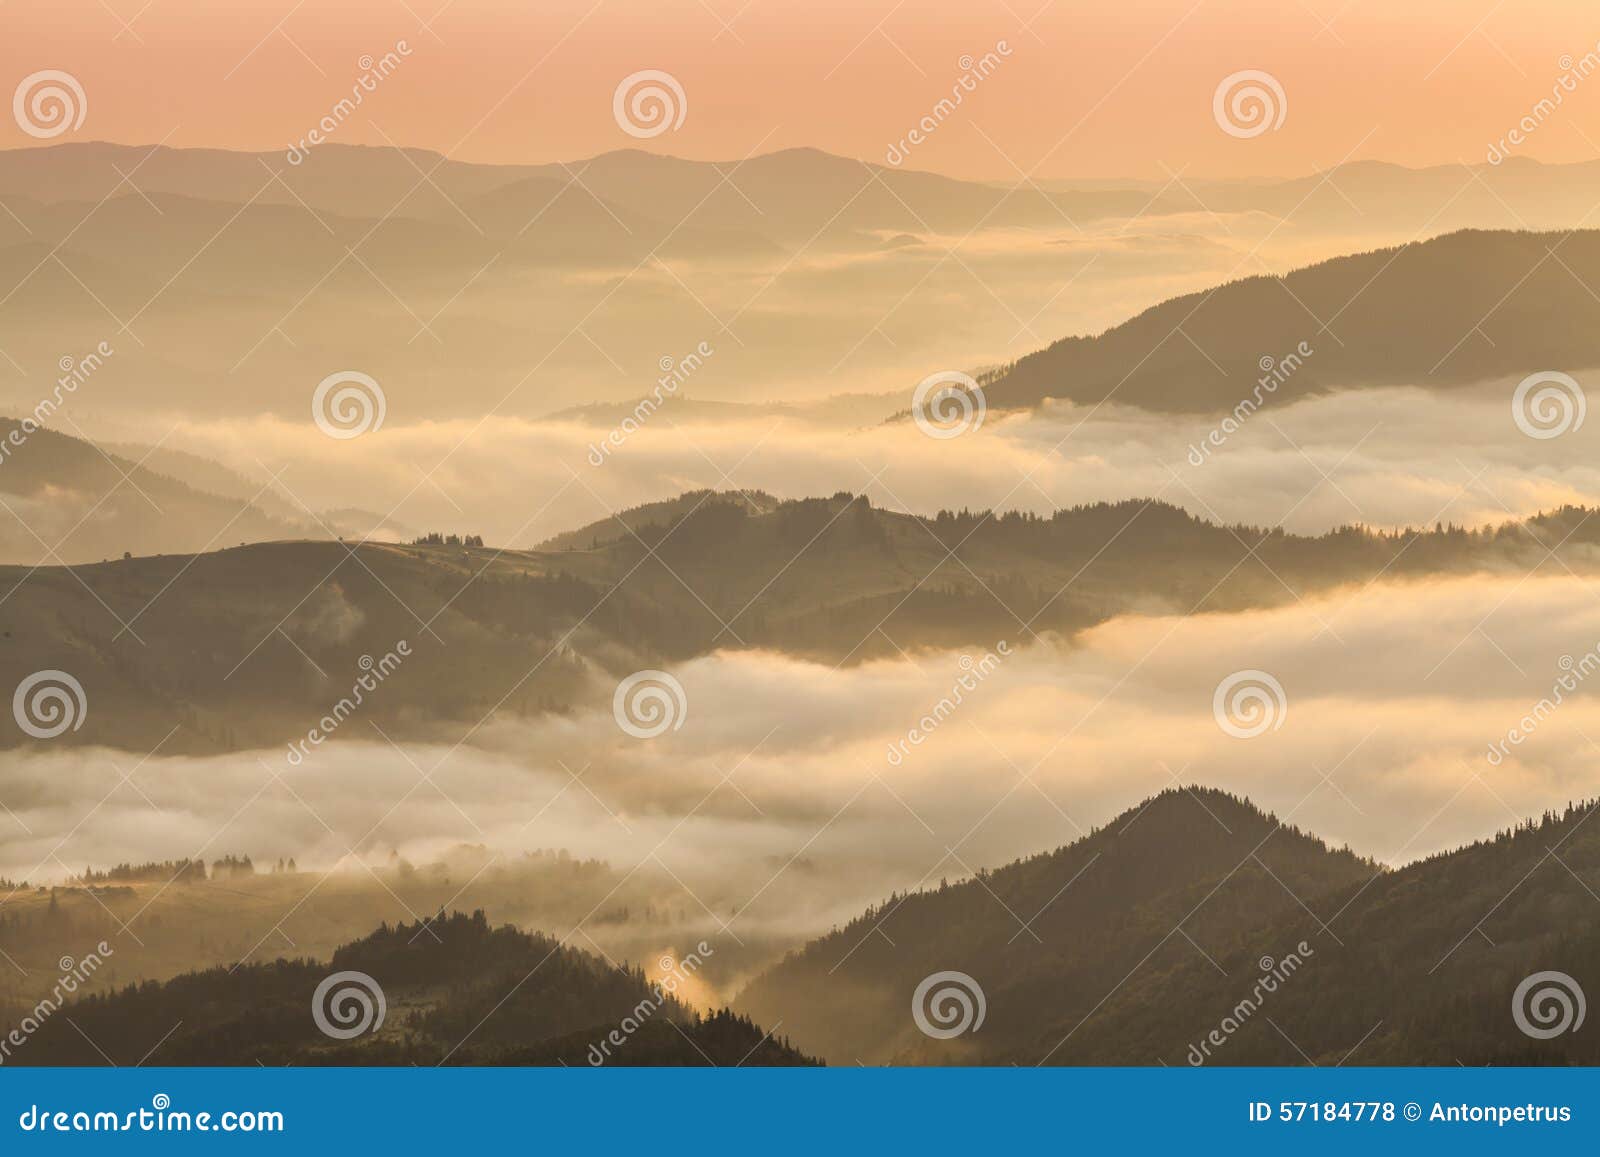 Amazing Mountain Landscape with Dense Fog. Stock Photo - Image of ...